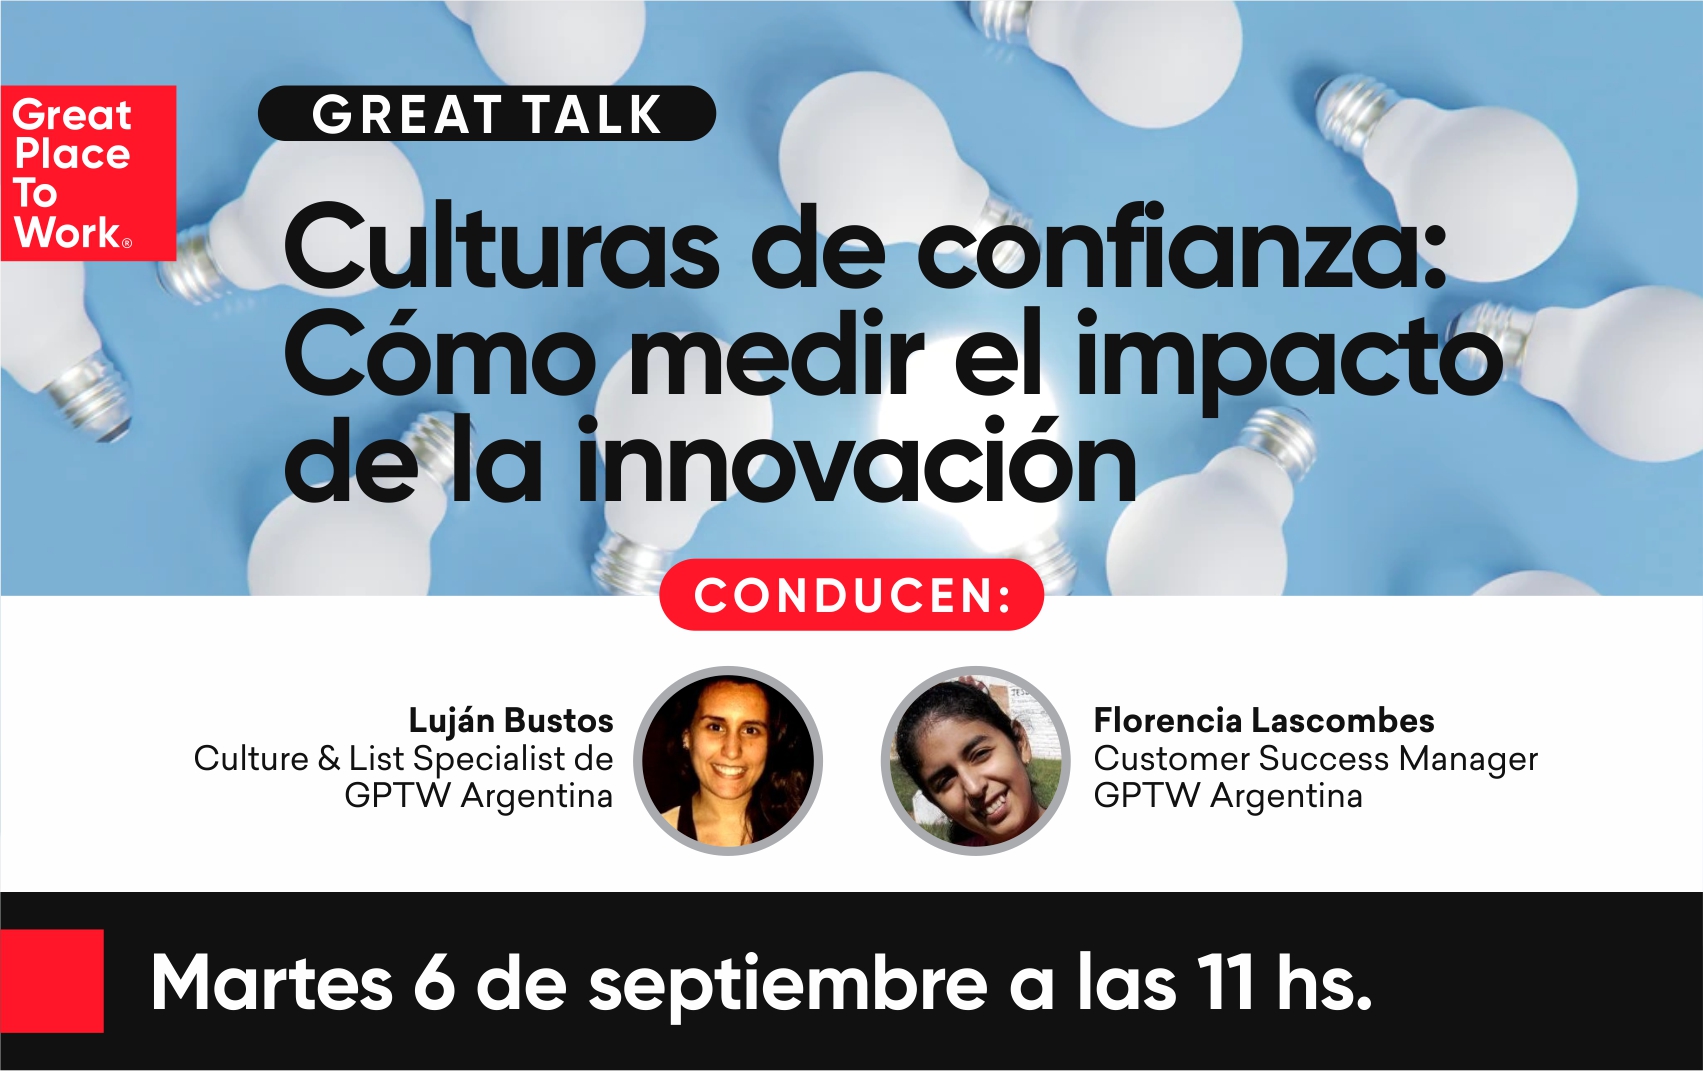 Great Talk: Culturas de confianza: Cómo medir el impacto de la innovación